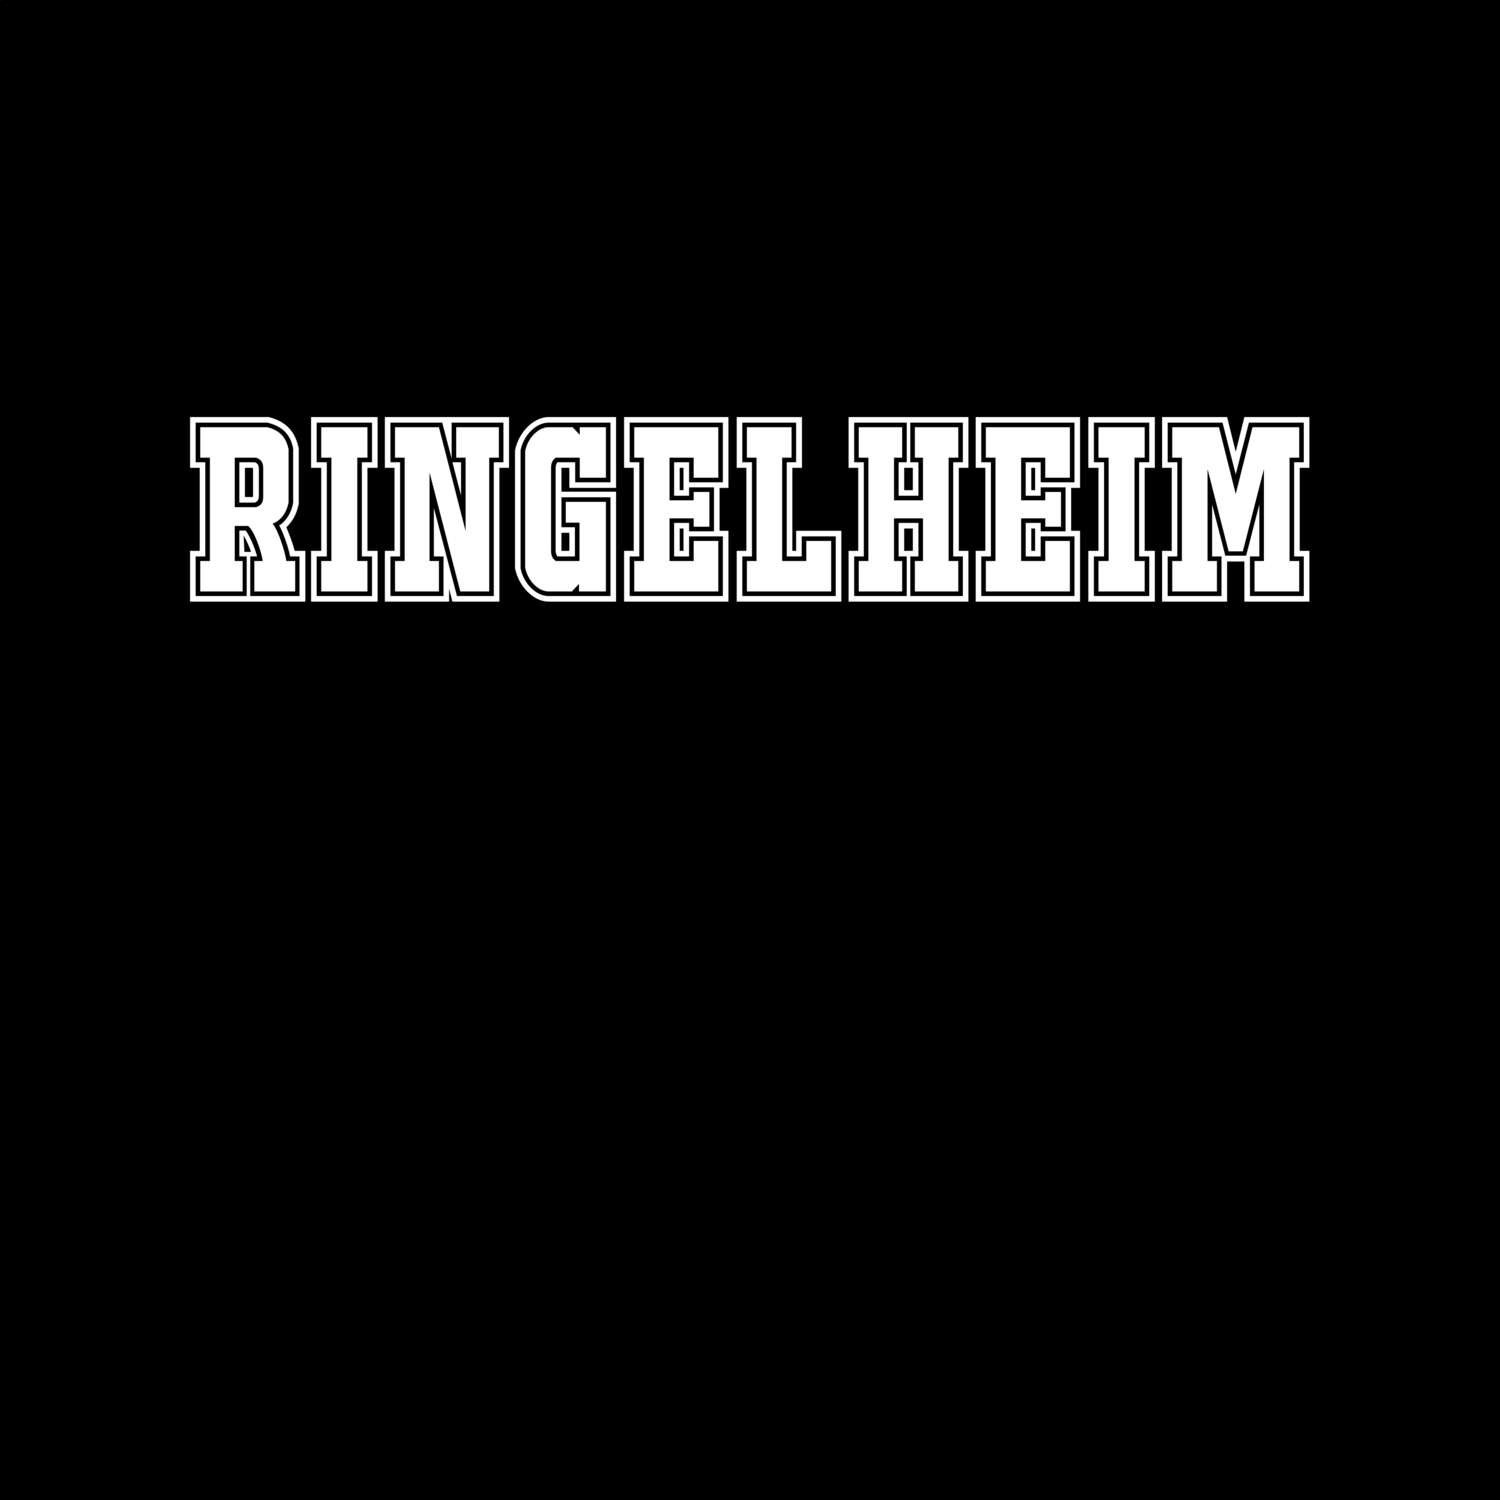 Ringelheim T-Shirt »Classic«